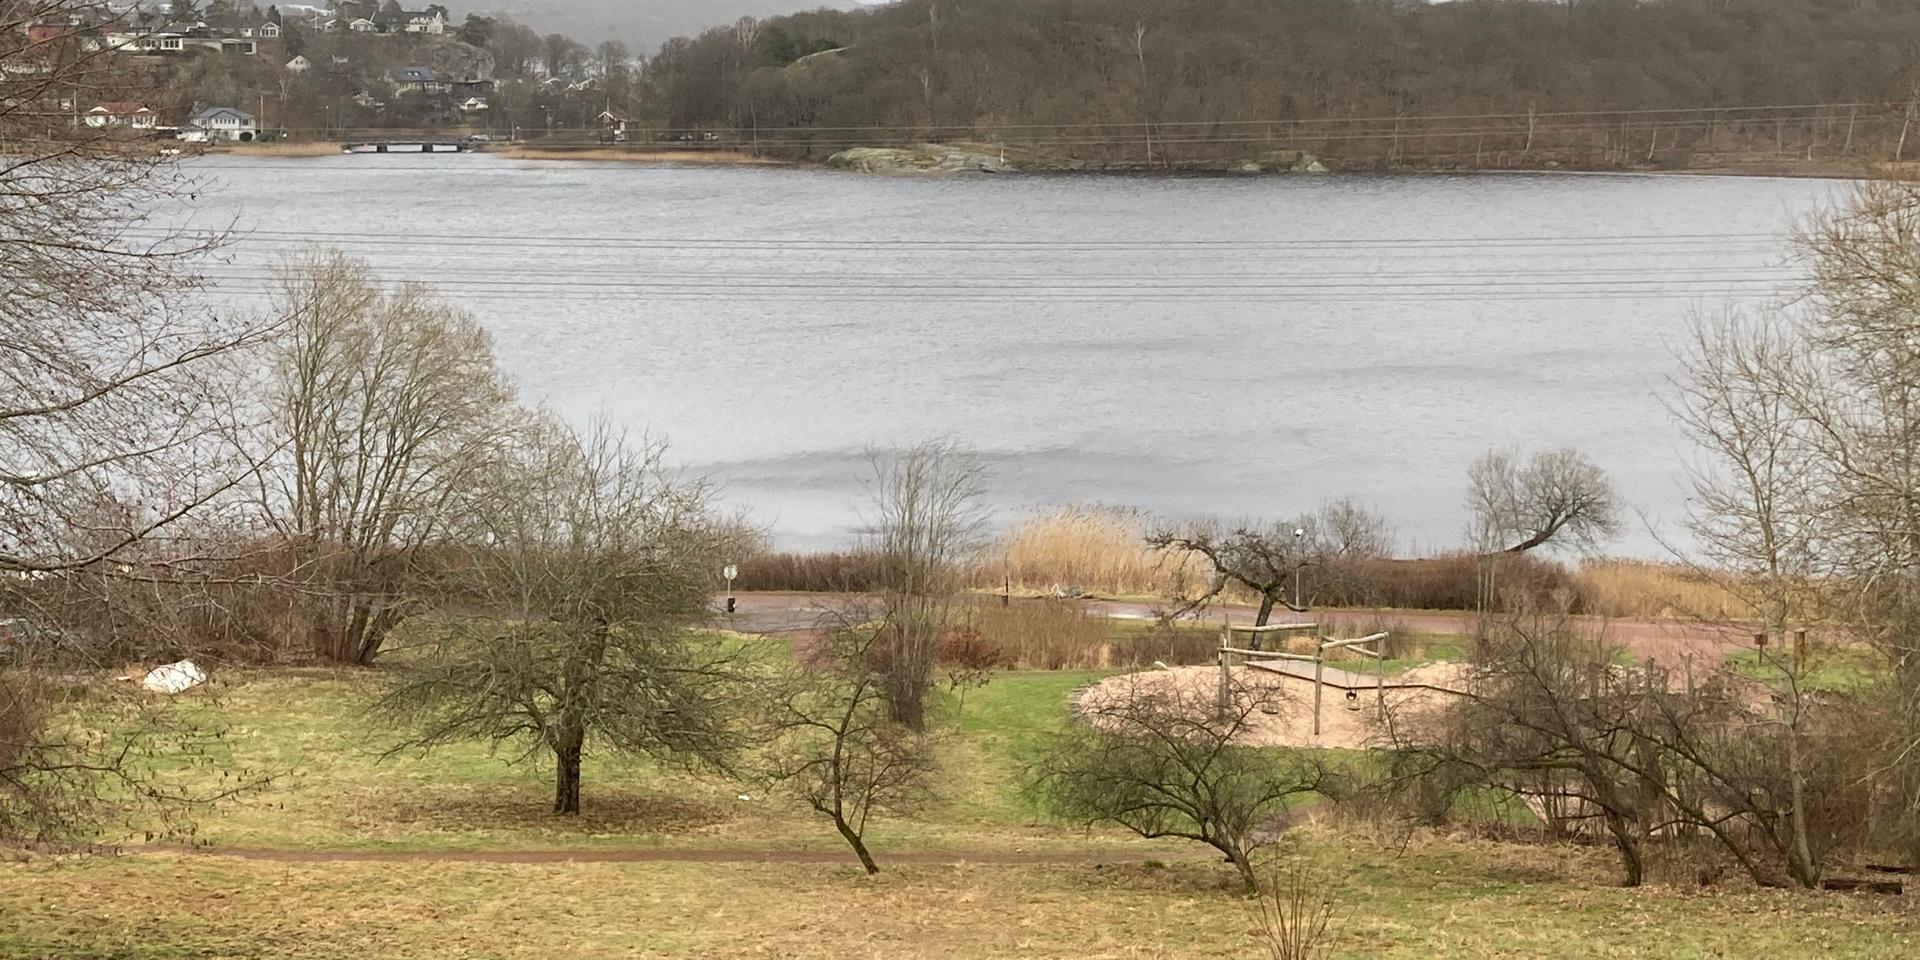 Stensjön är en av de mest förorenade platserna i Mölndal. En kemtvätt i området har orsakat allvarliga föroreningar med cancerframkallande lösningsmedel.